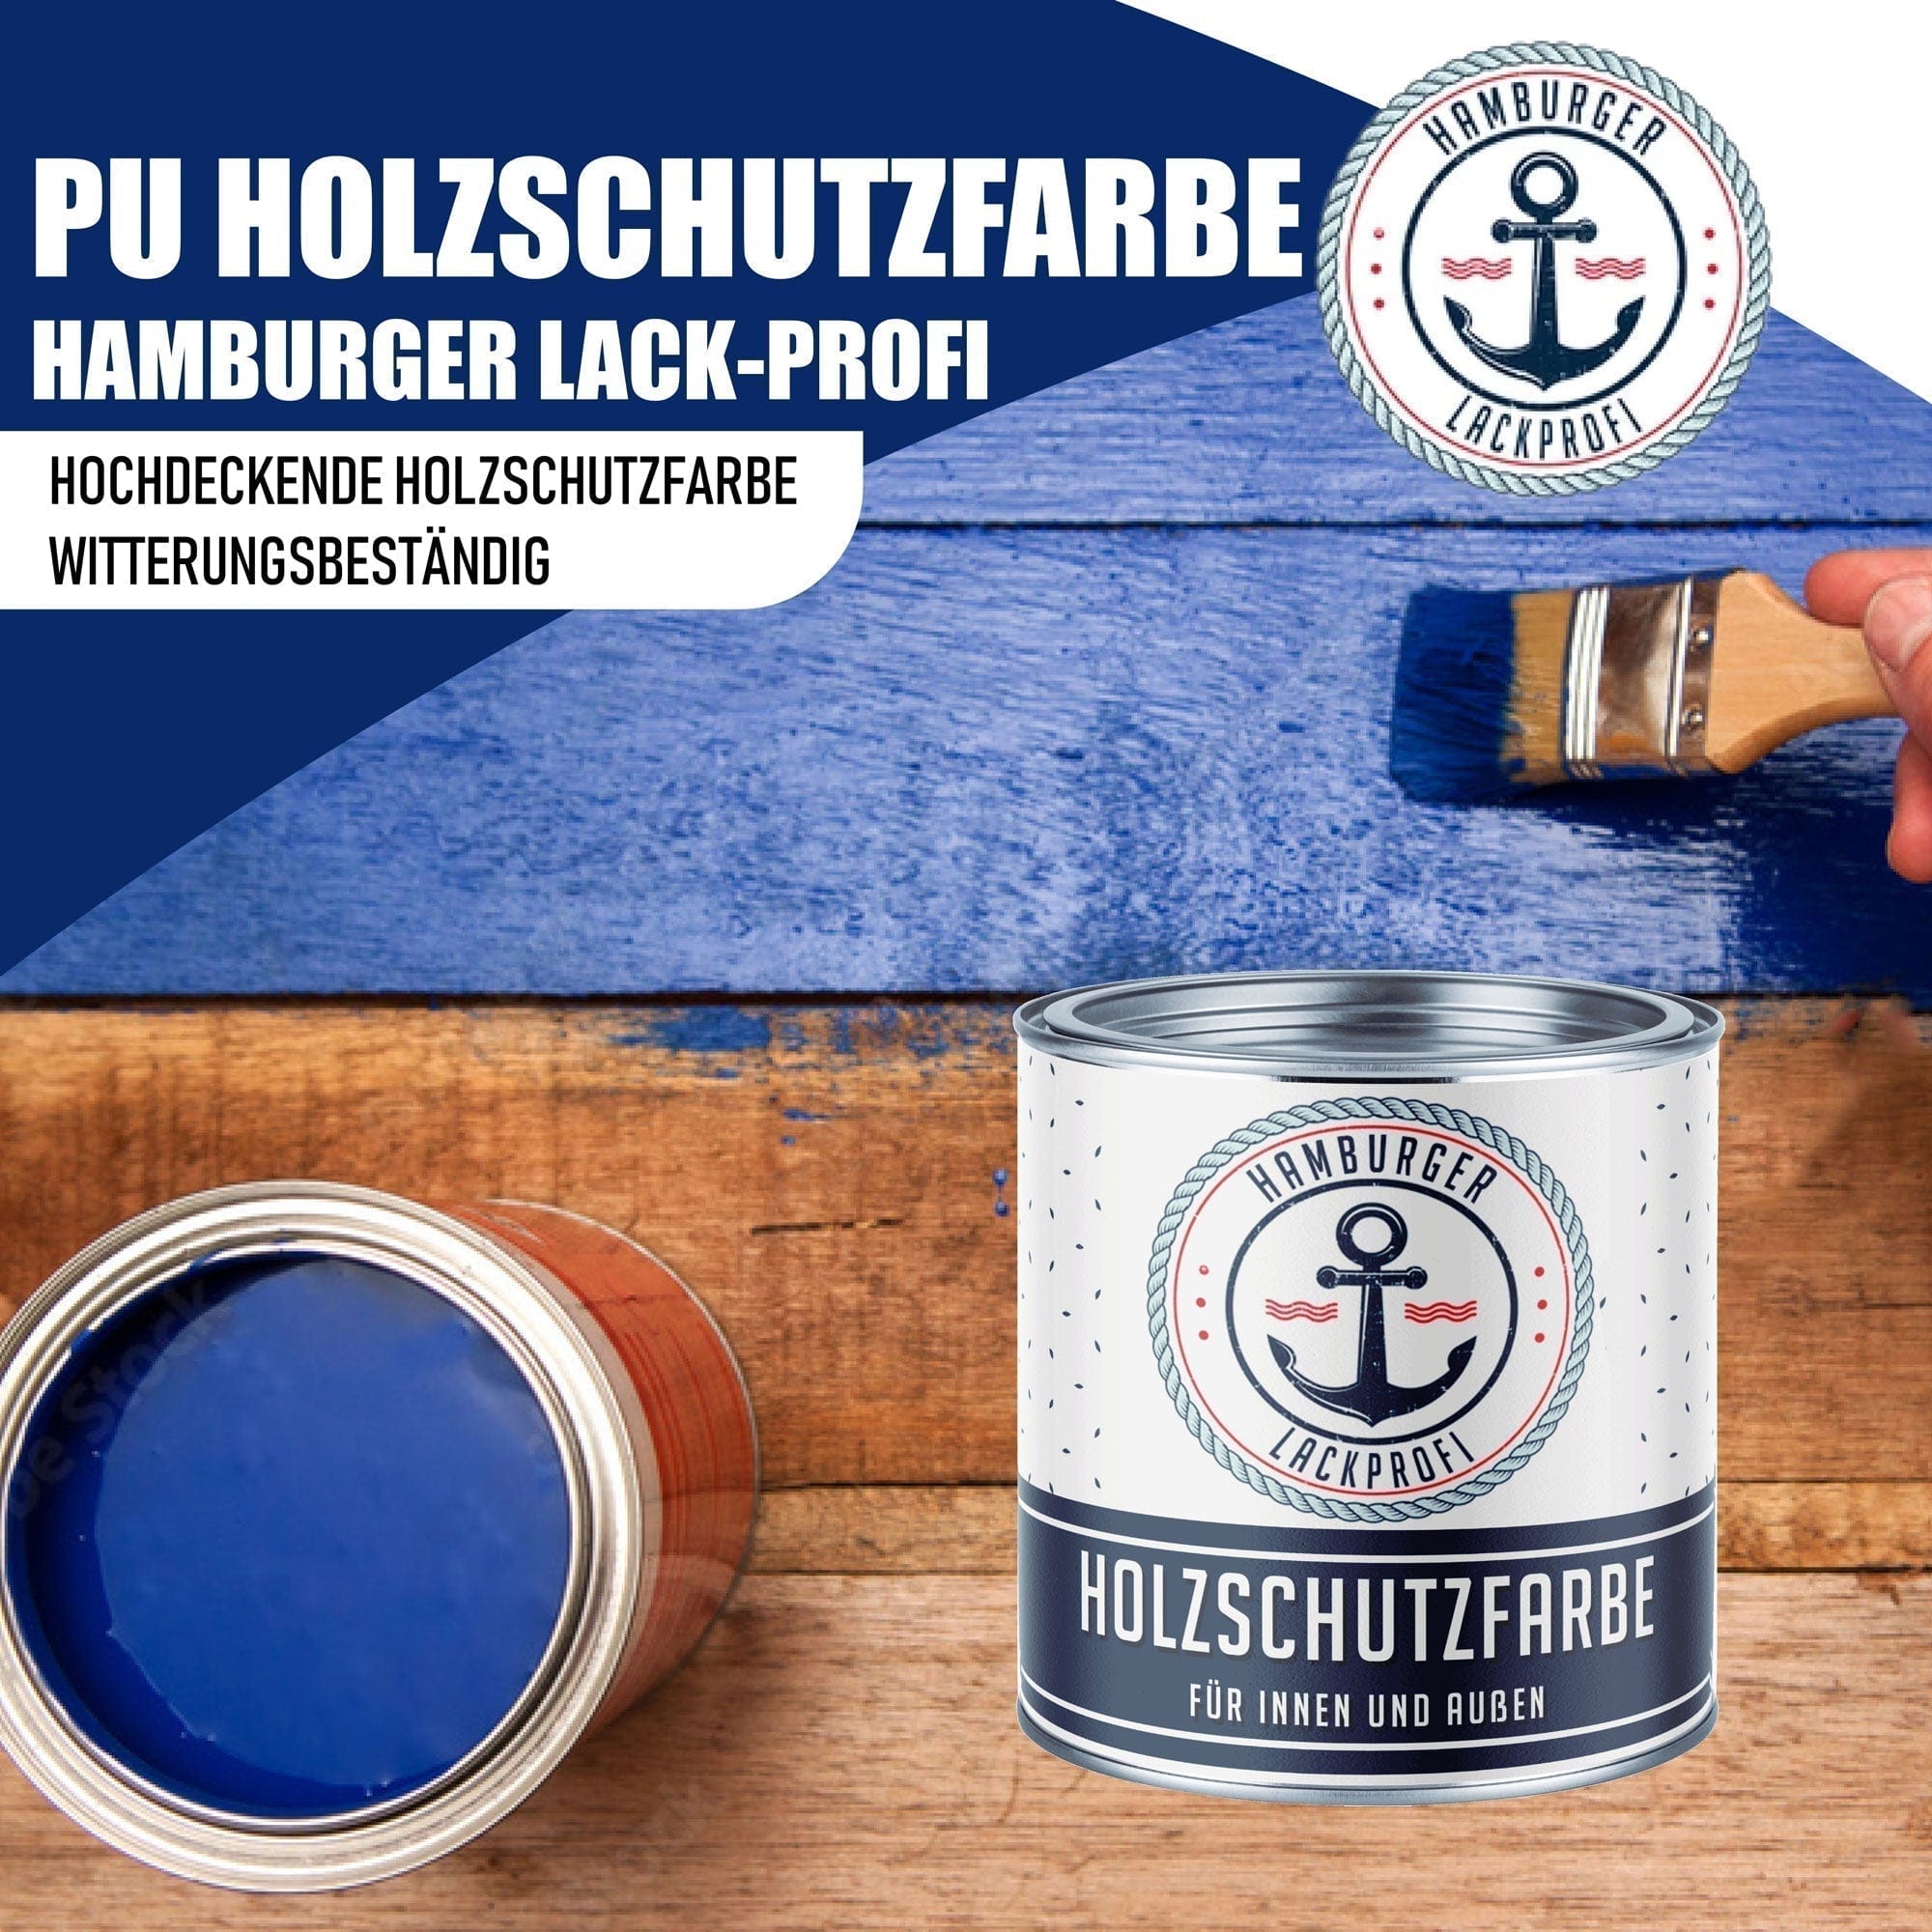 Hamburger Lack-Profi Lacke & Beschichtungen PU Holzschutzfarbe RAL 6000 Patinagrün - Wetterschutzfarbe